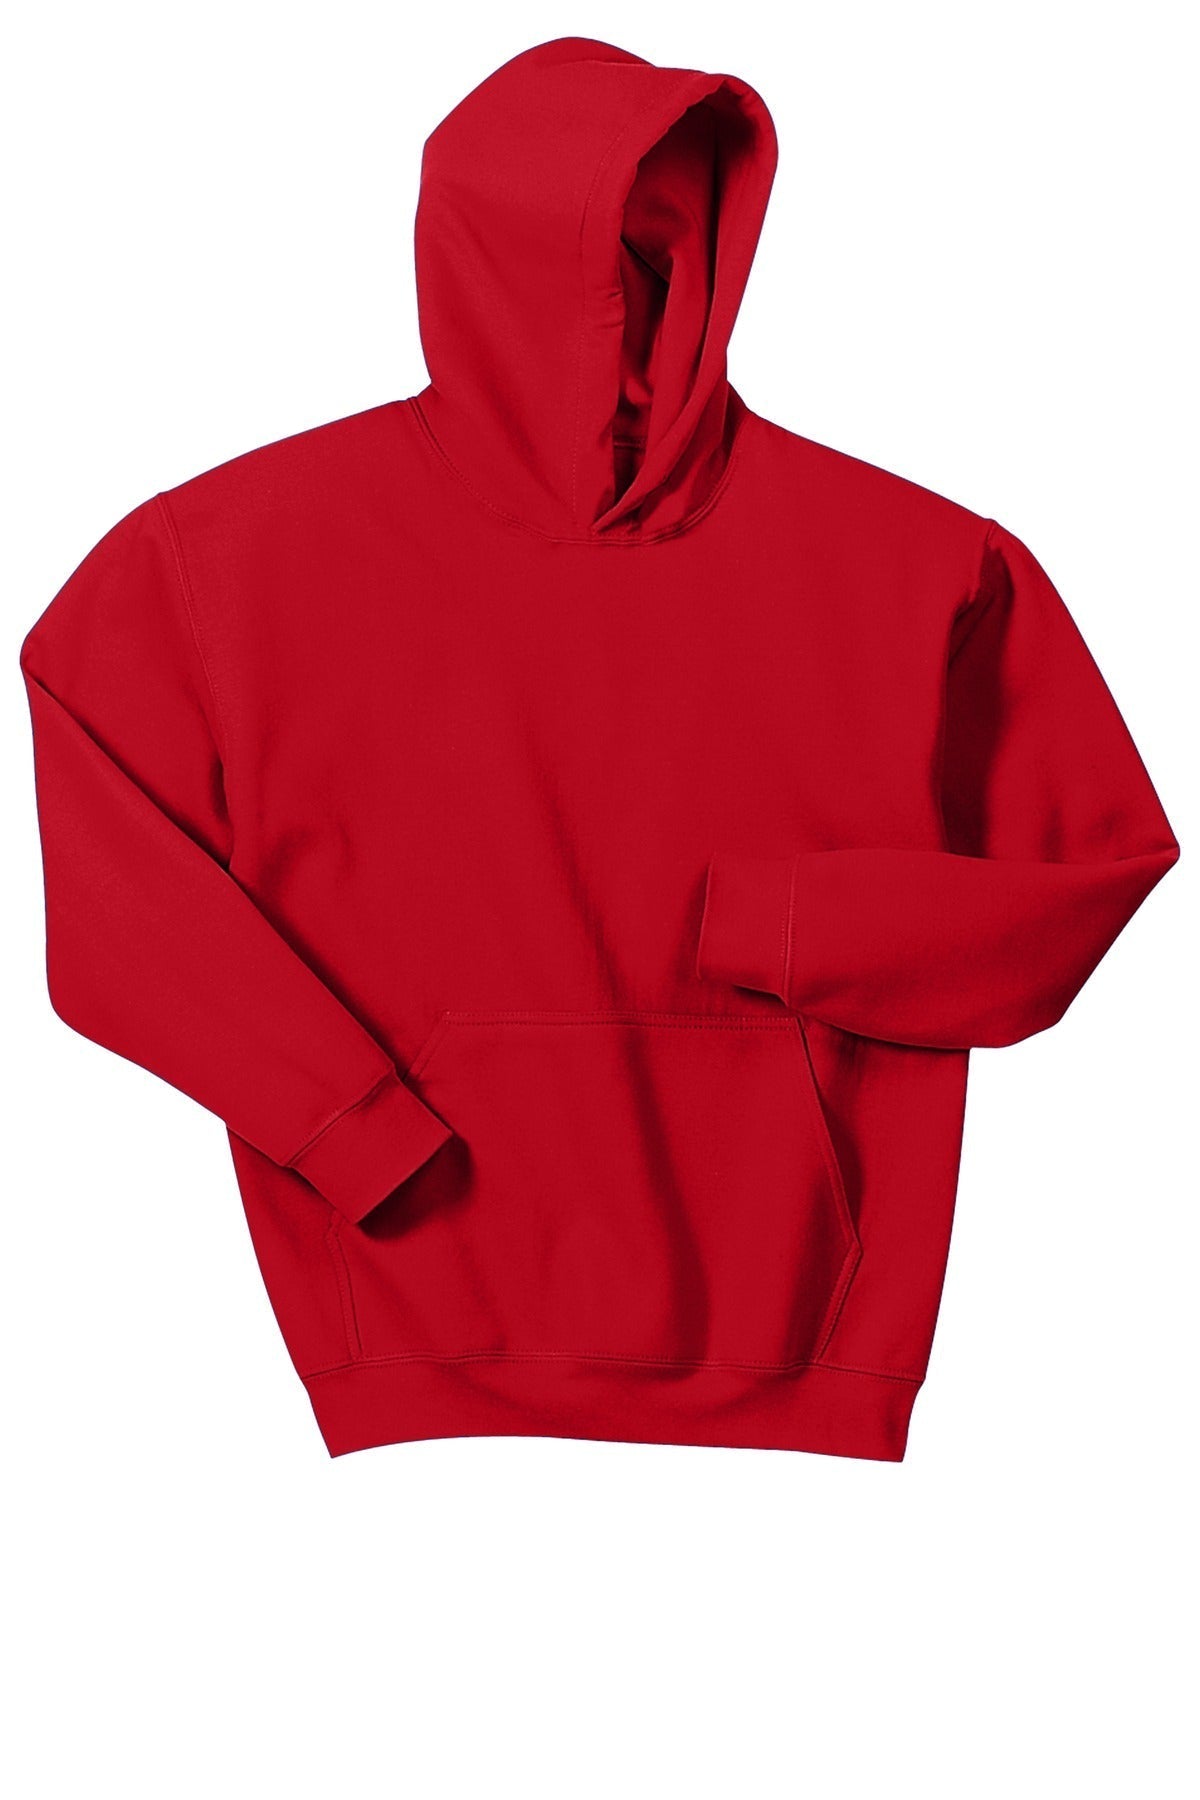 Gone RogueGildan® - Youth Heavy Blend™ Hooded Sweatshirt. 18500B Logo #4